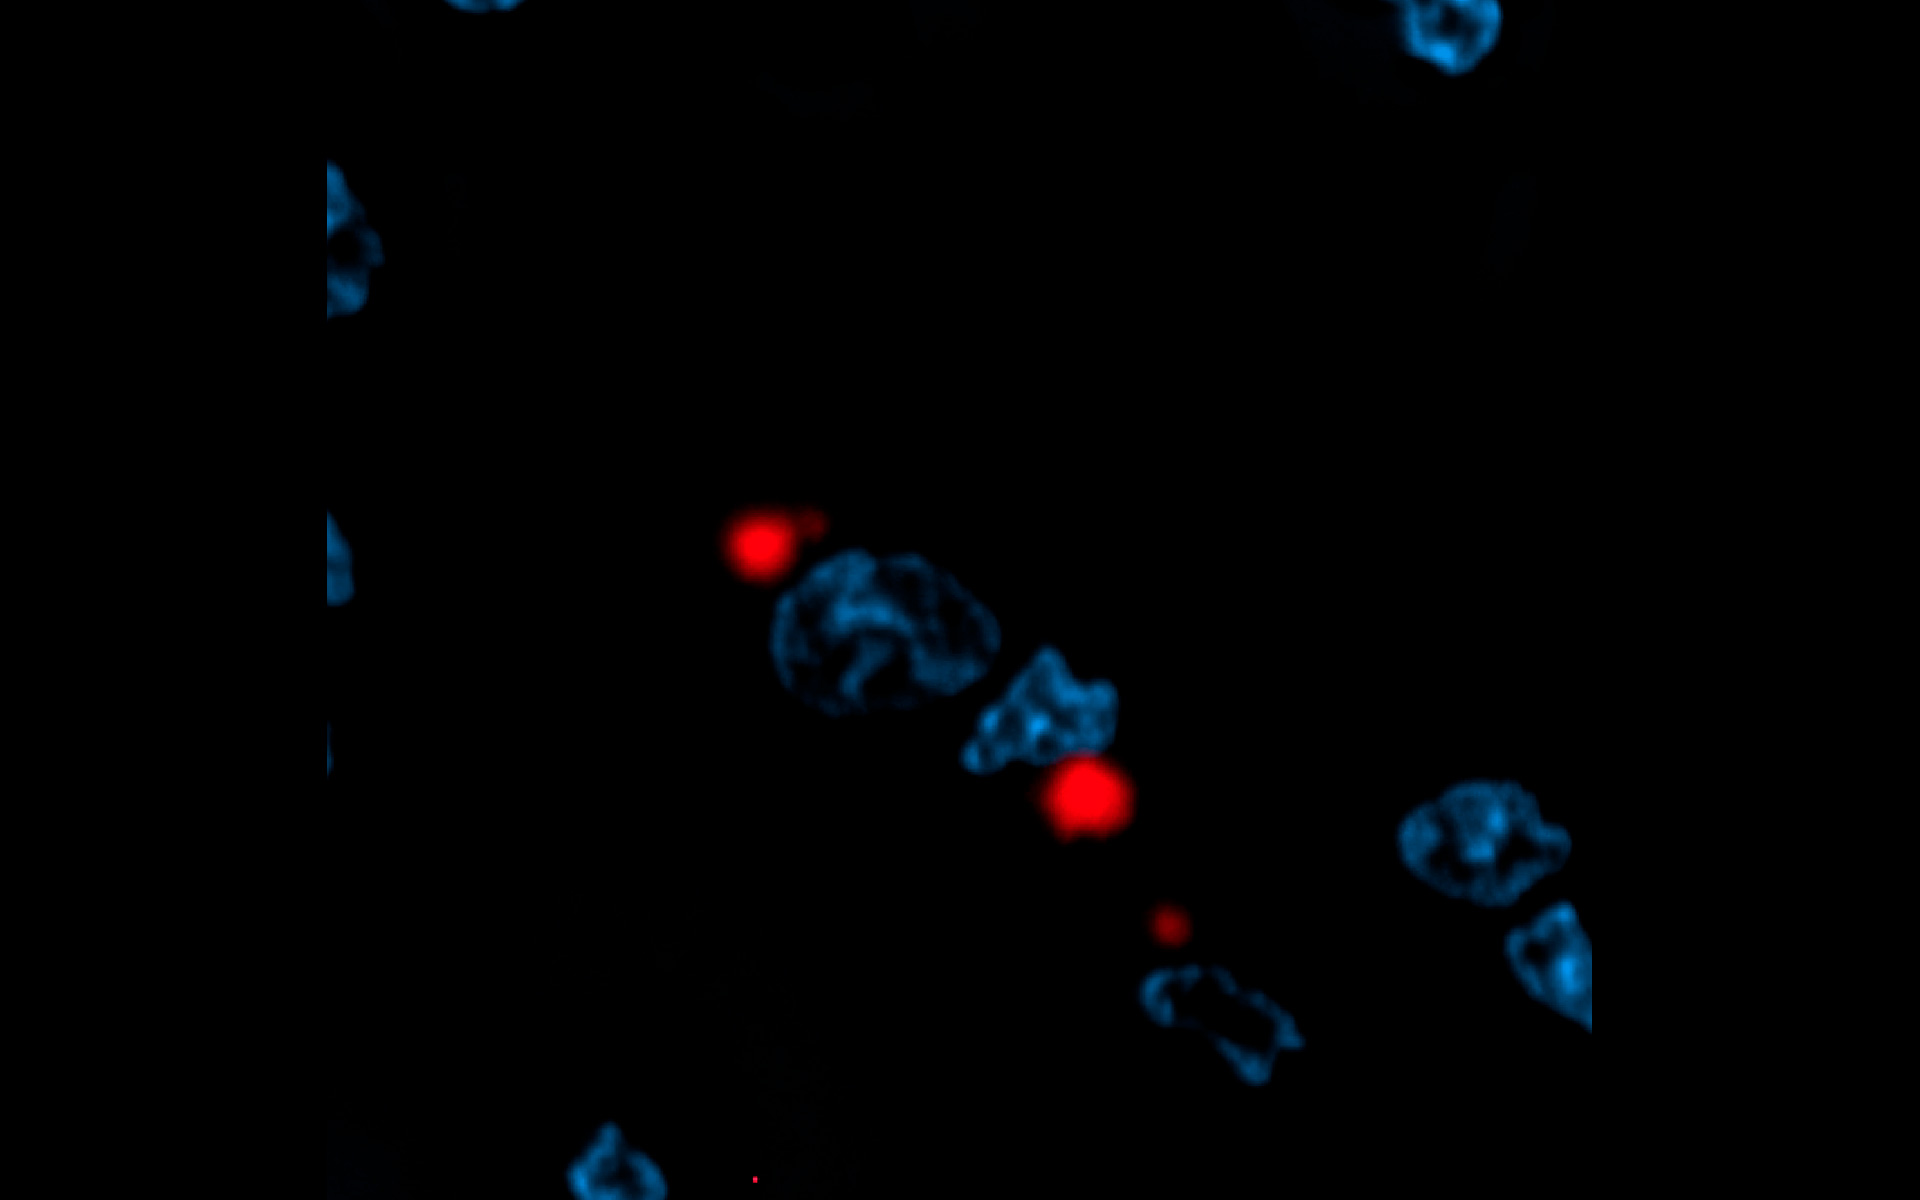 変異型ハンチンチンタンパク質の凝集により誘発されたタンパク質プラークを示すマクロファージ